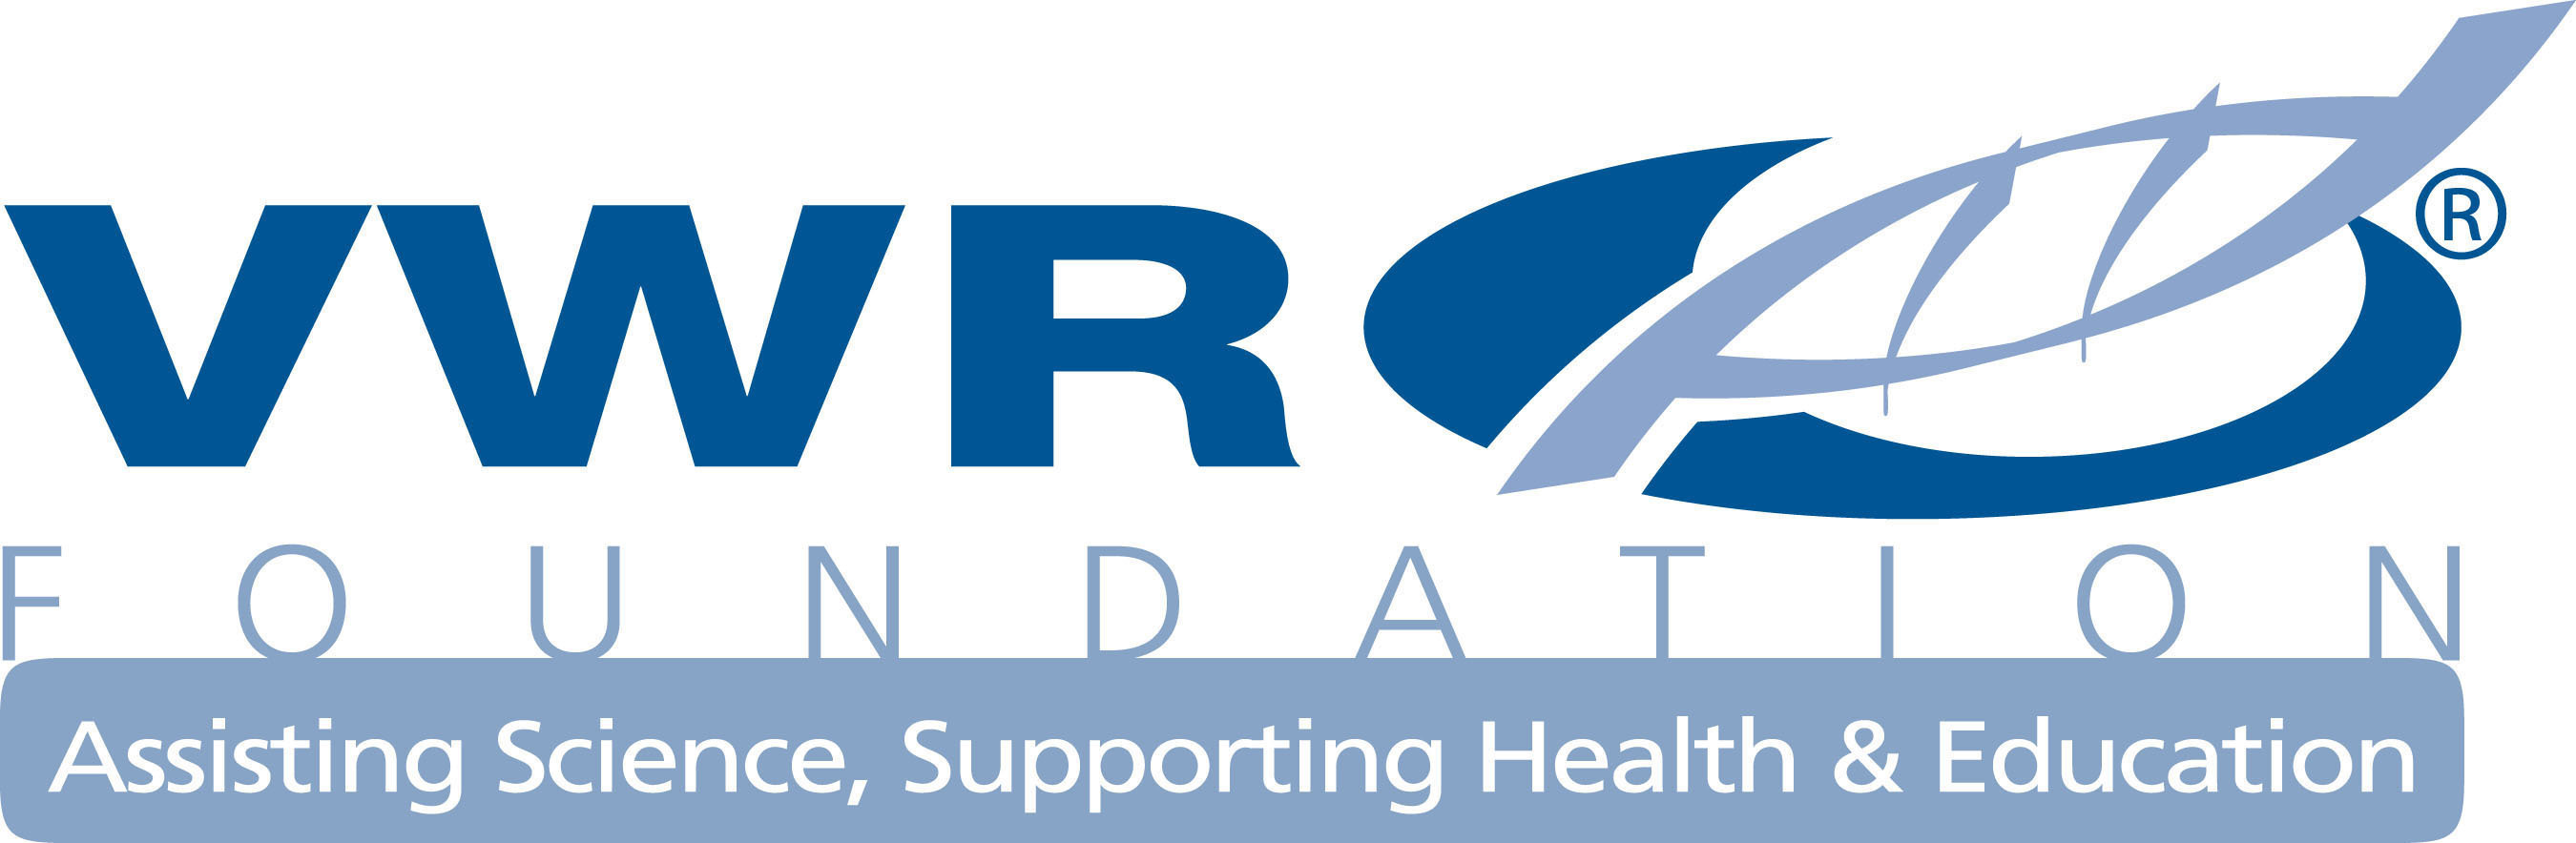 VWR Foundation logo